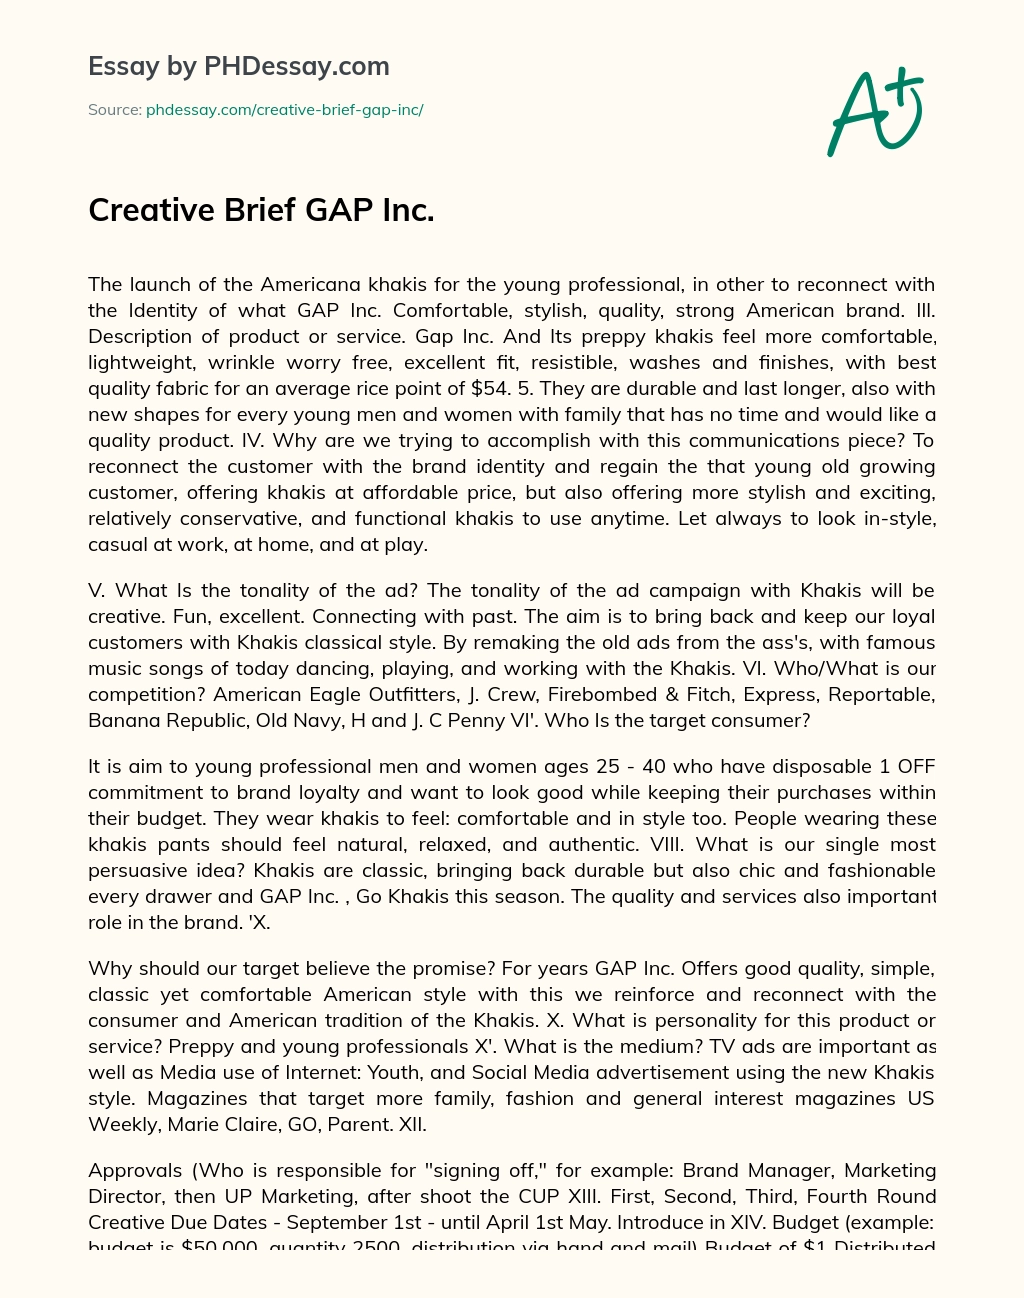 Creative Brief GAP Inc. essay